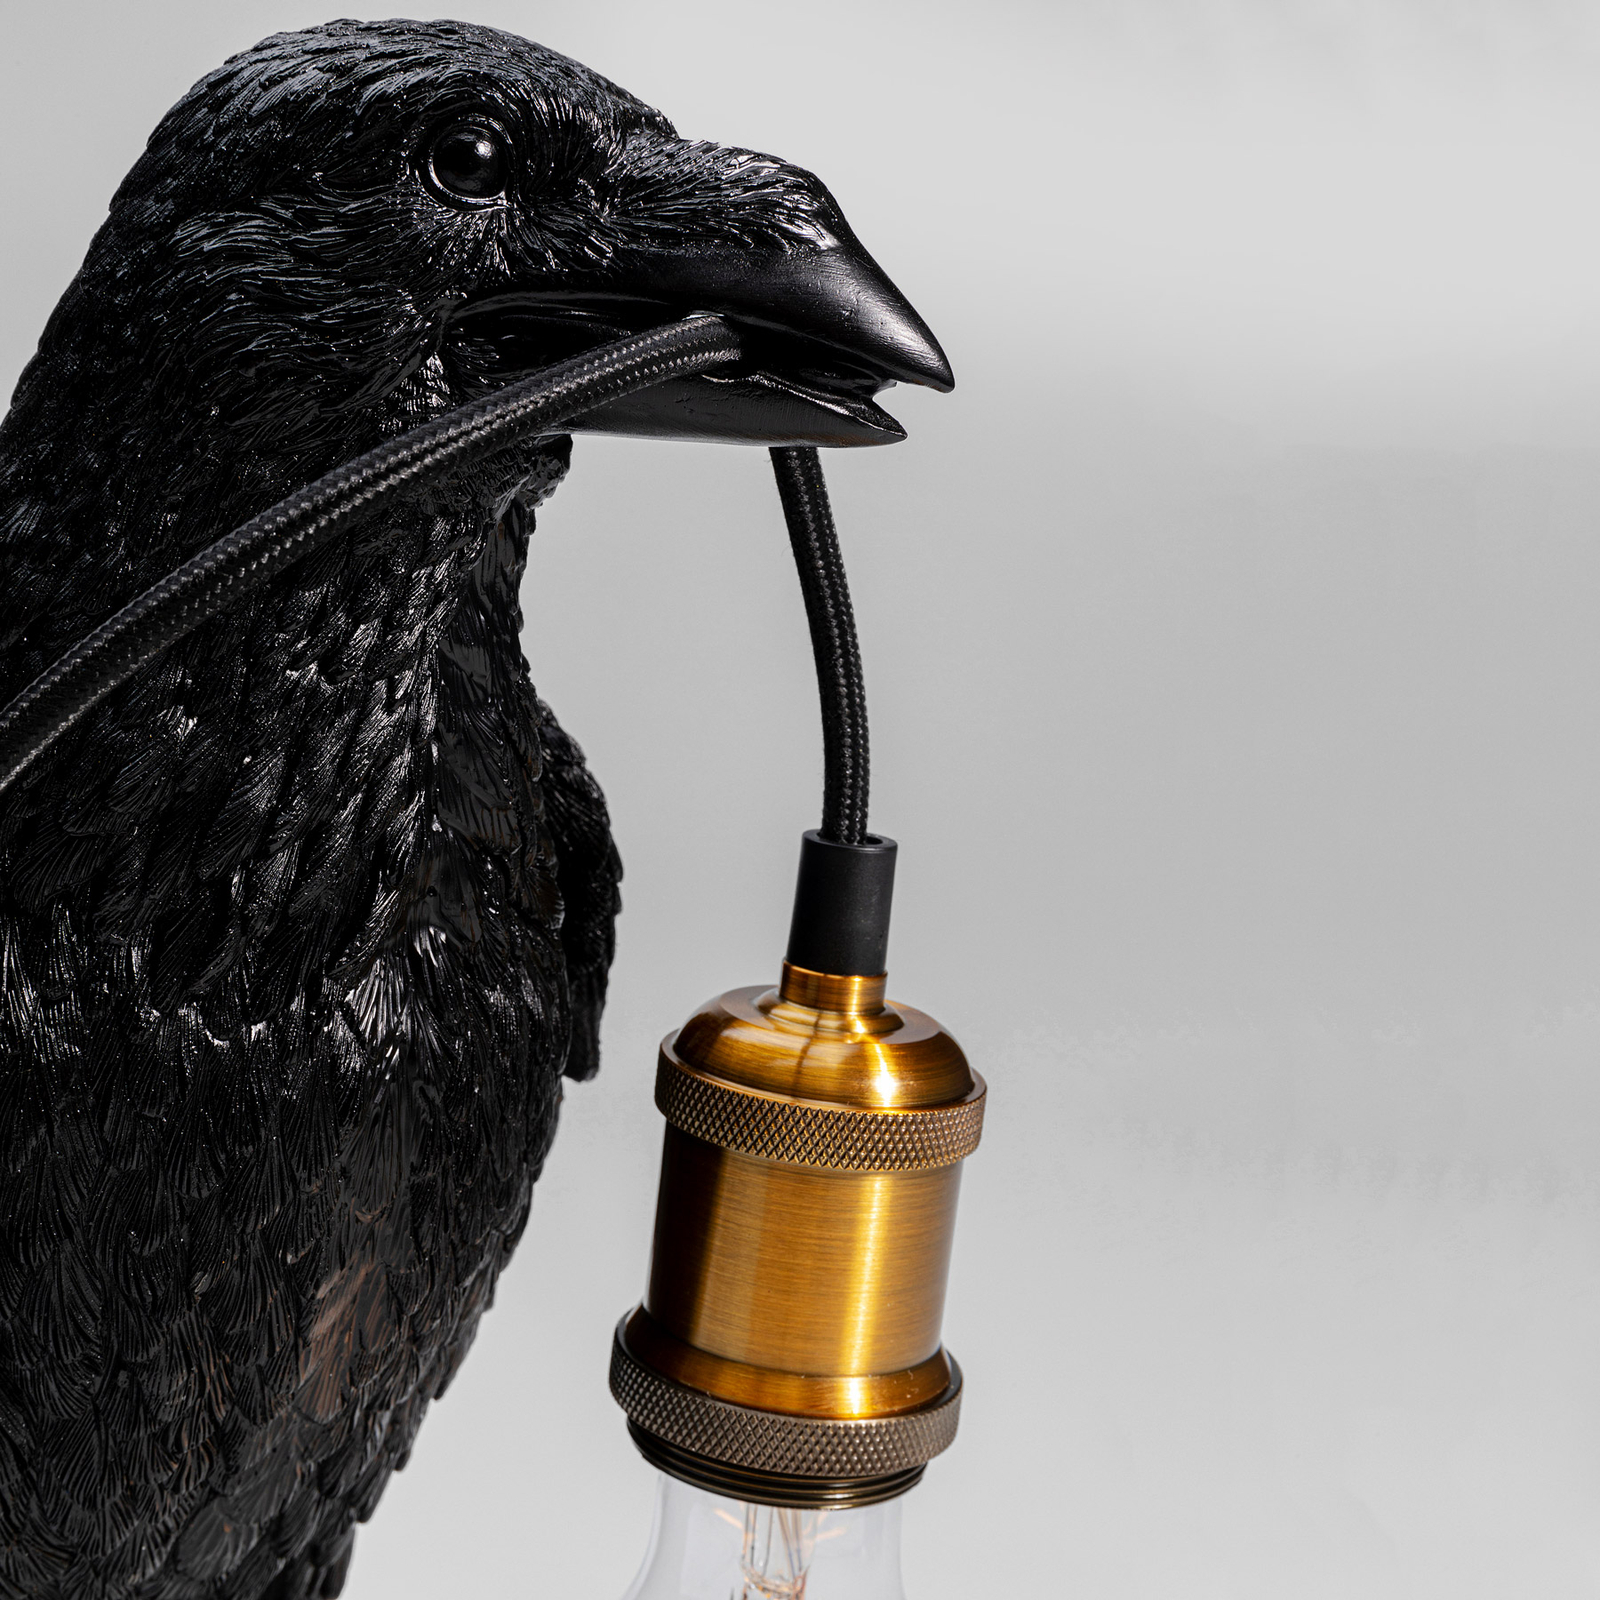 KARE Animal Crow Tischlampe in Form einer Krähe